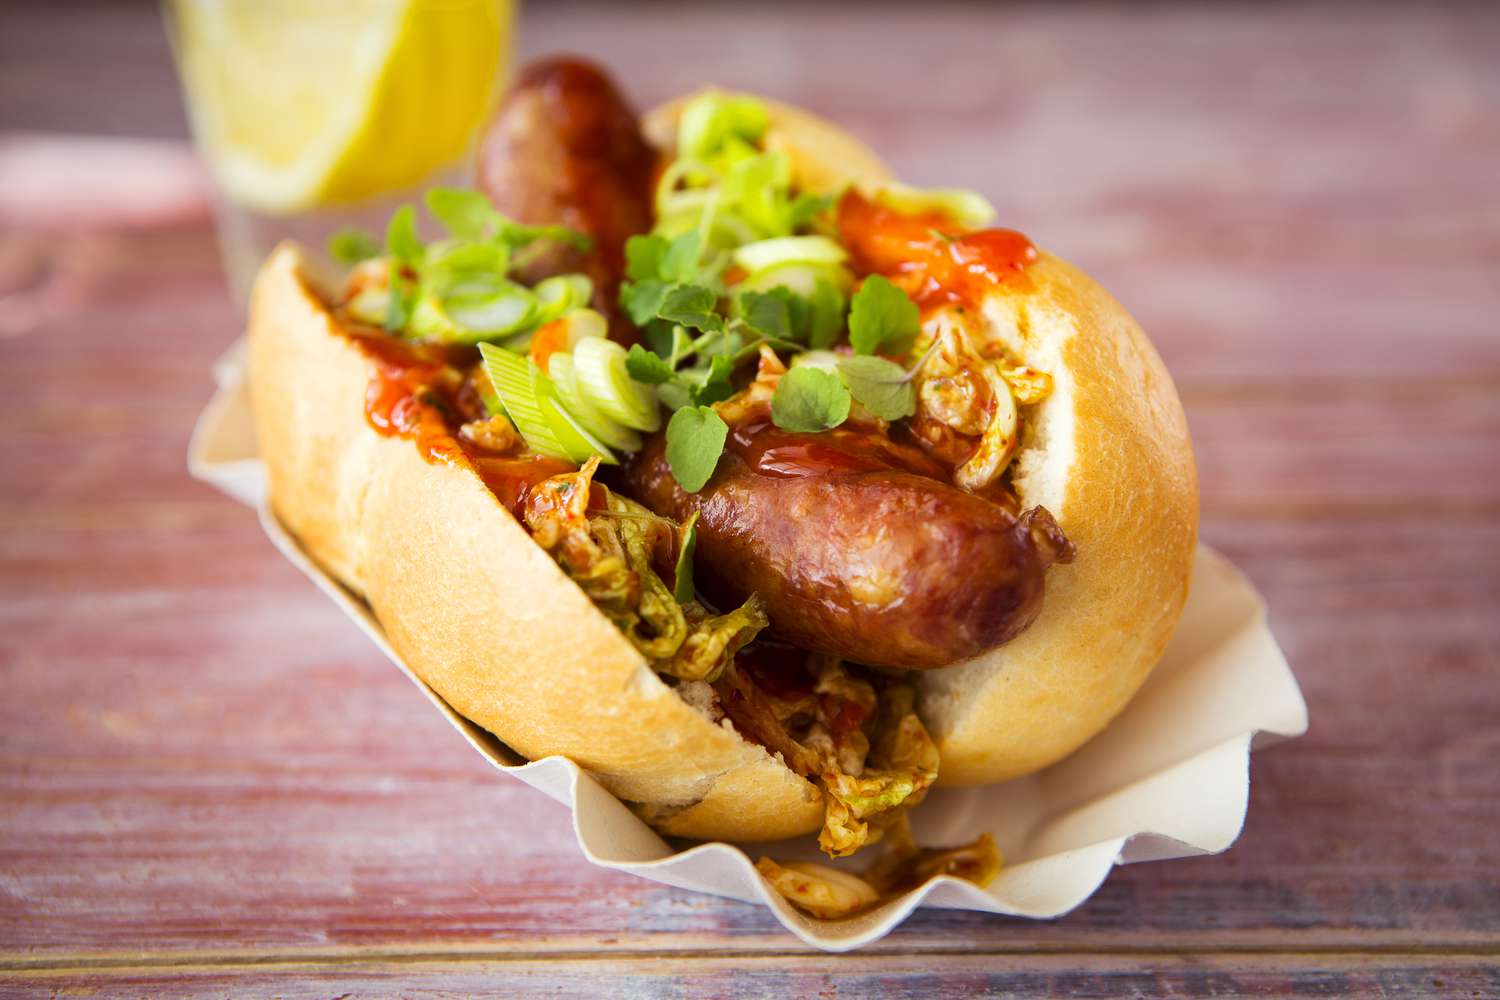 Aziatische hotdog, gebakken worst, pittige Chinese kool, hete chilisaus, lente-uitjes, tuinkers, broodje